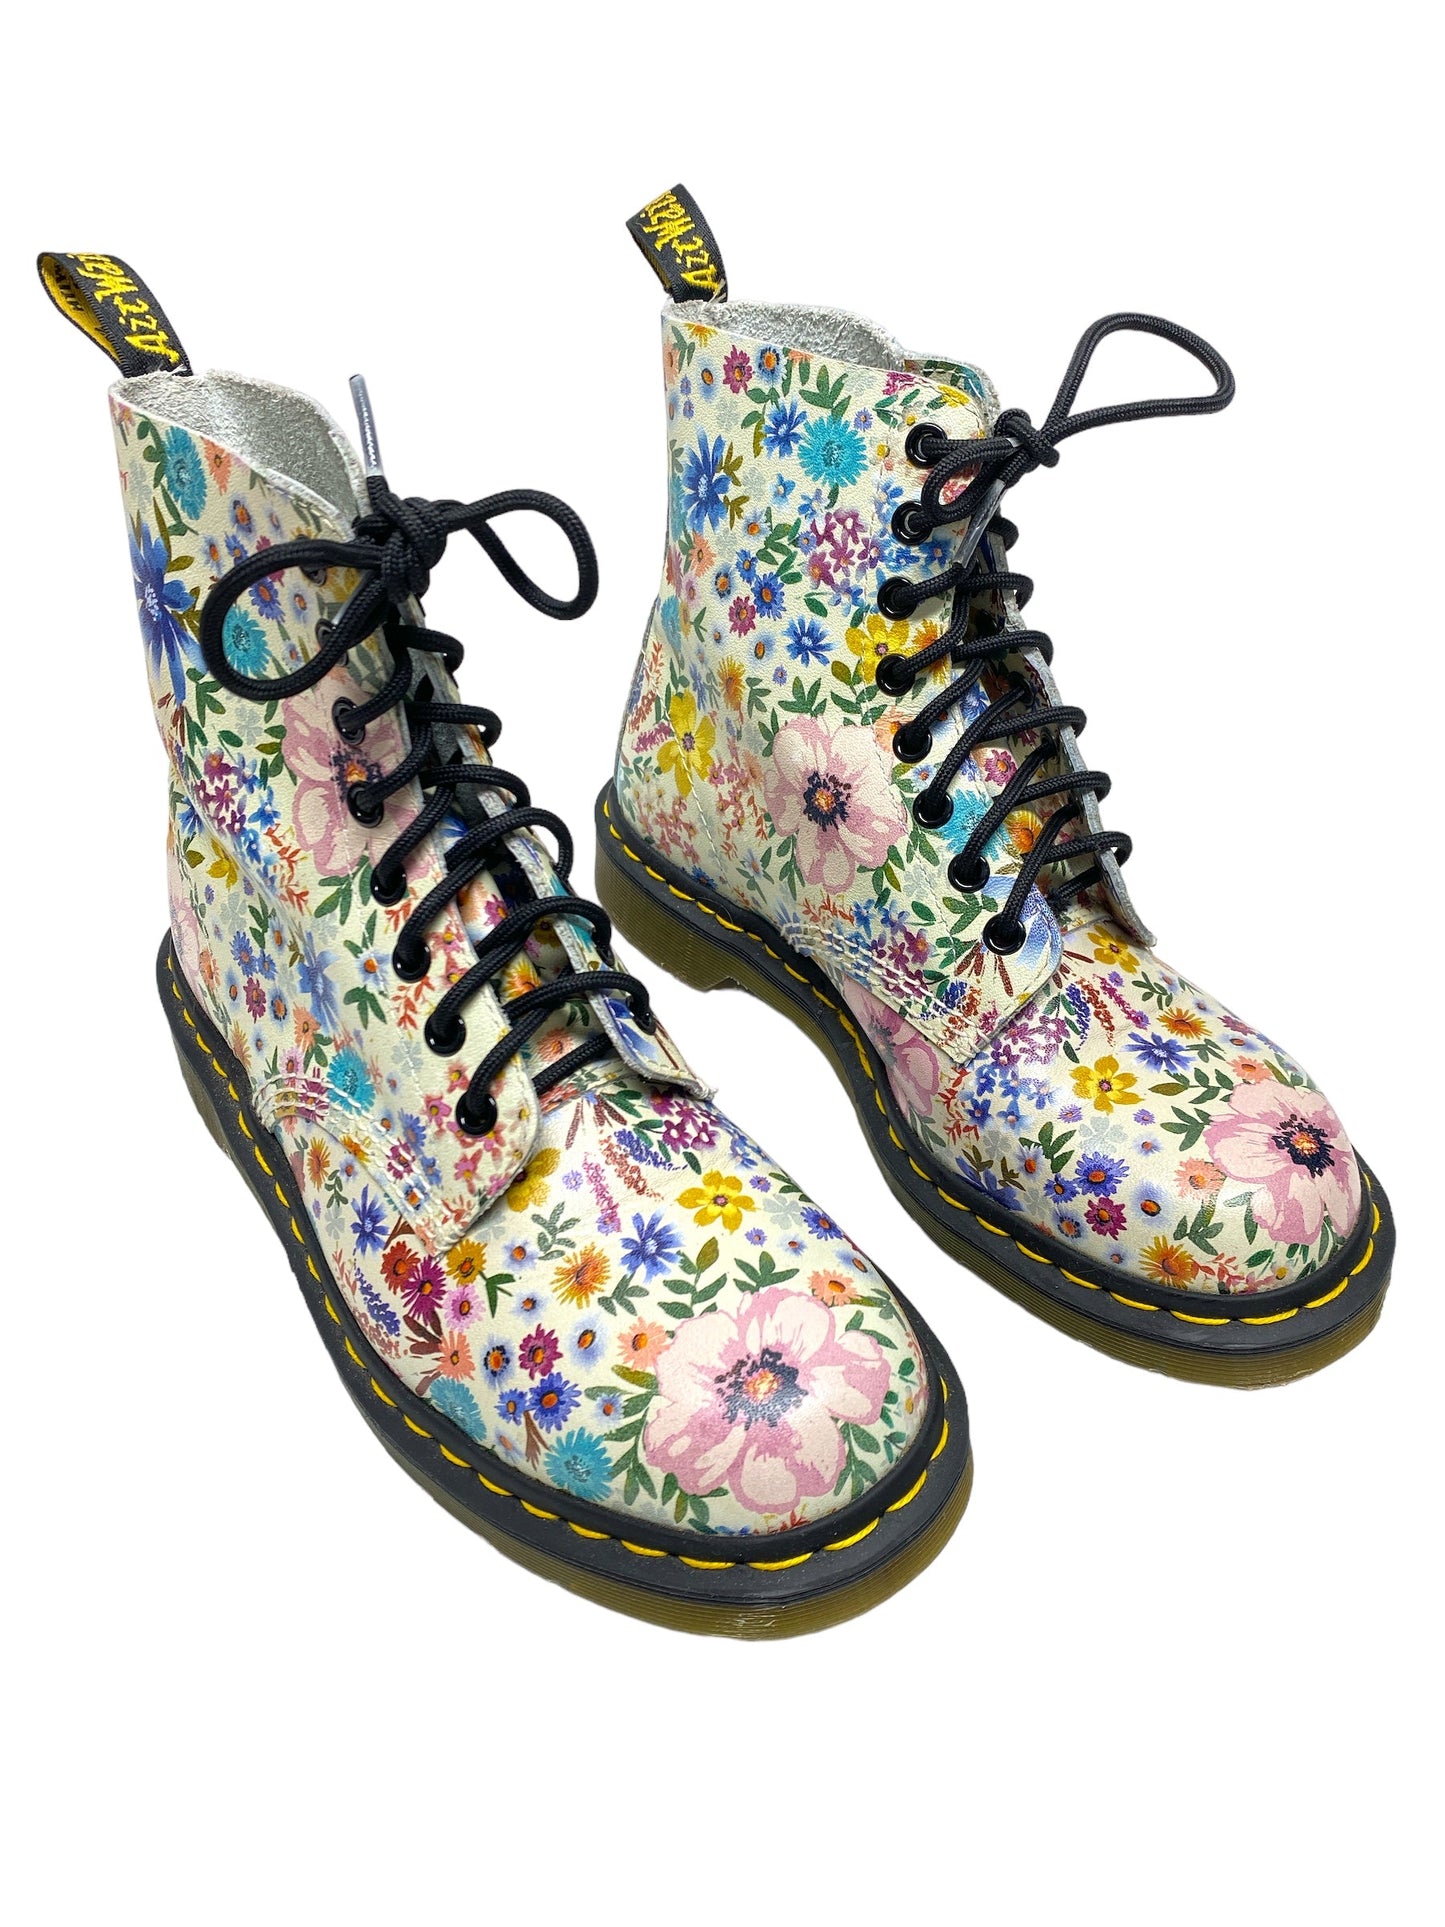 Floral Print Boots Combat Dr Martens, Size 8